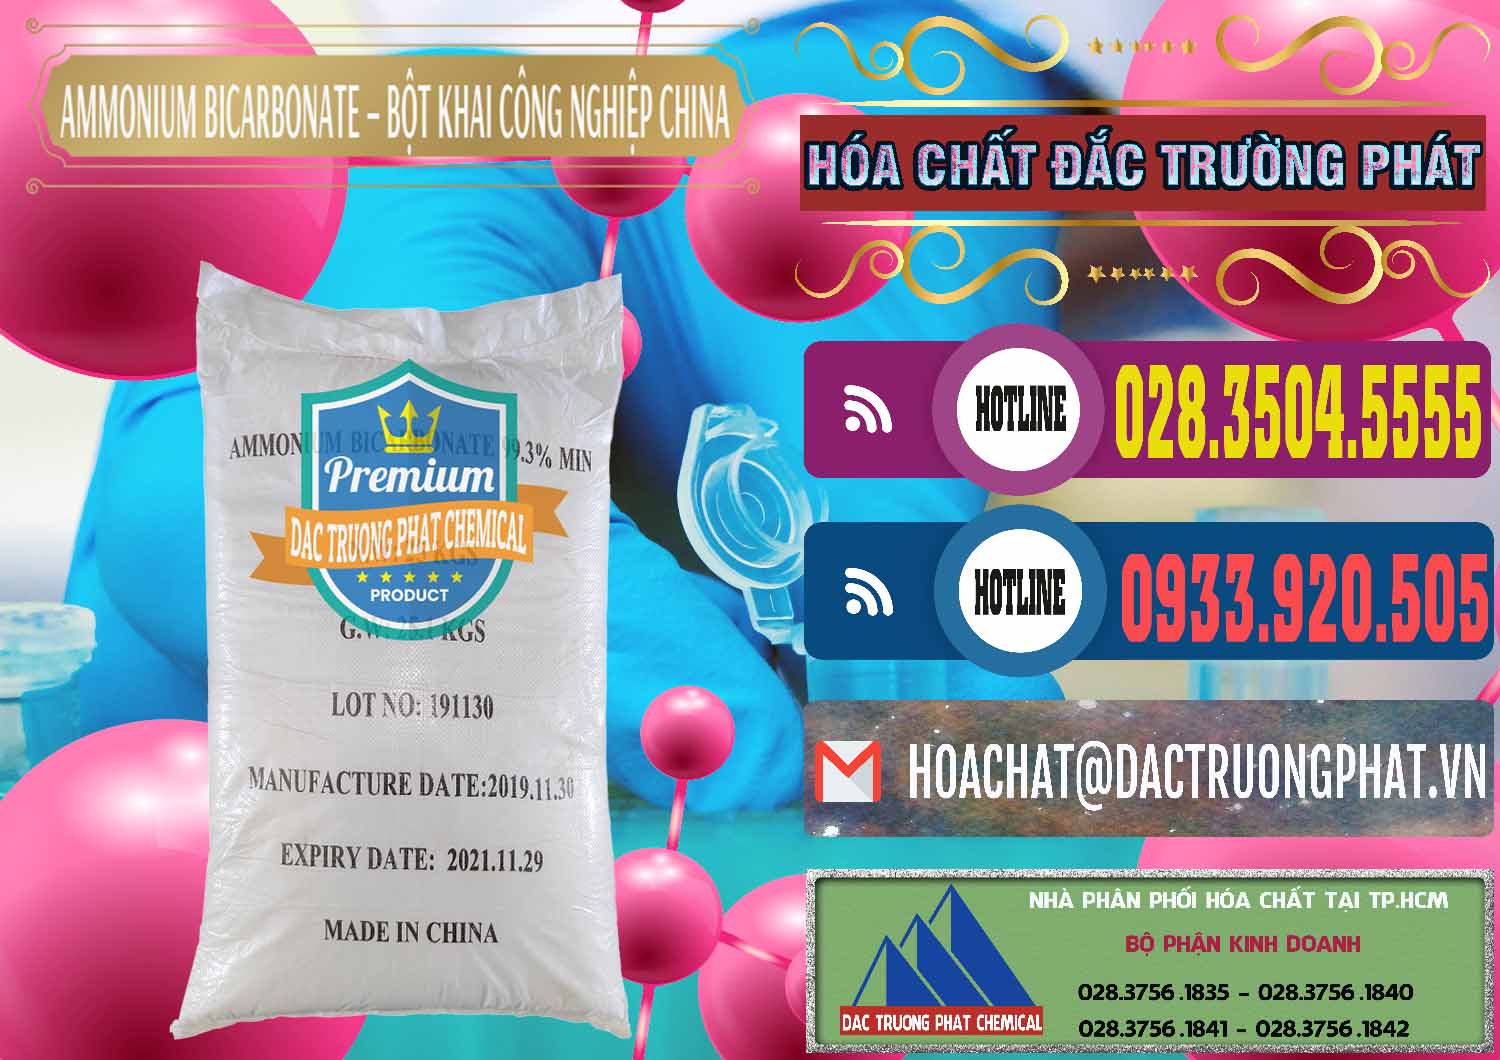 Đơn vị chuyên cung cấp và bán Ammonium Bicarbonate – Bột Khai Công Nghiệp Trung Quốc China - 0020 - Nơi chuyên nhập khẩu và phân phối hóa chất tại TP.HCM - muabanhoachat.com.vn